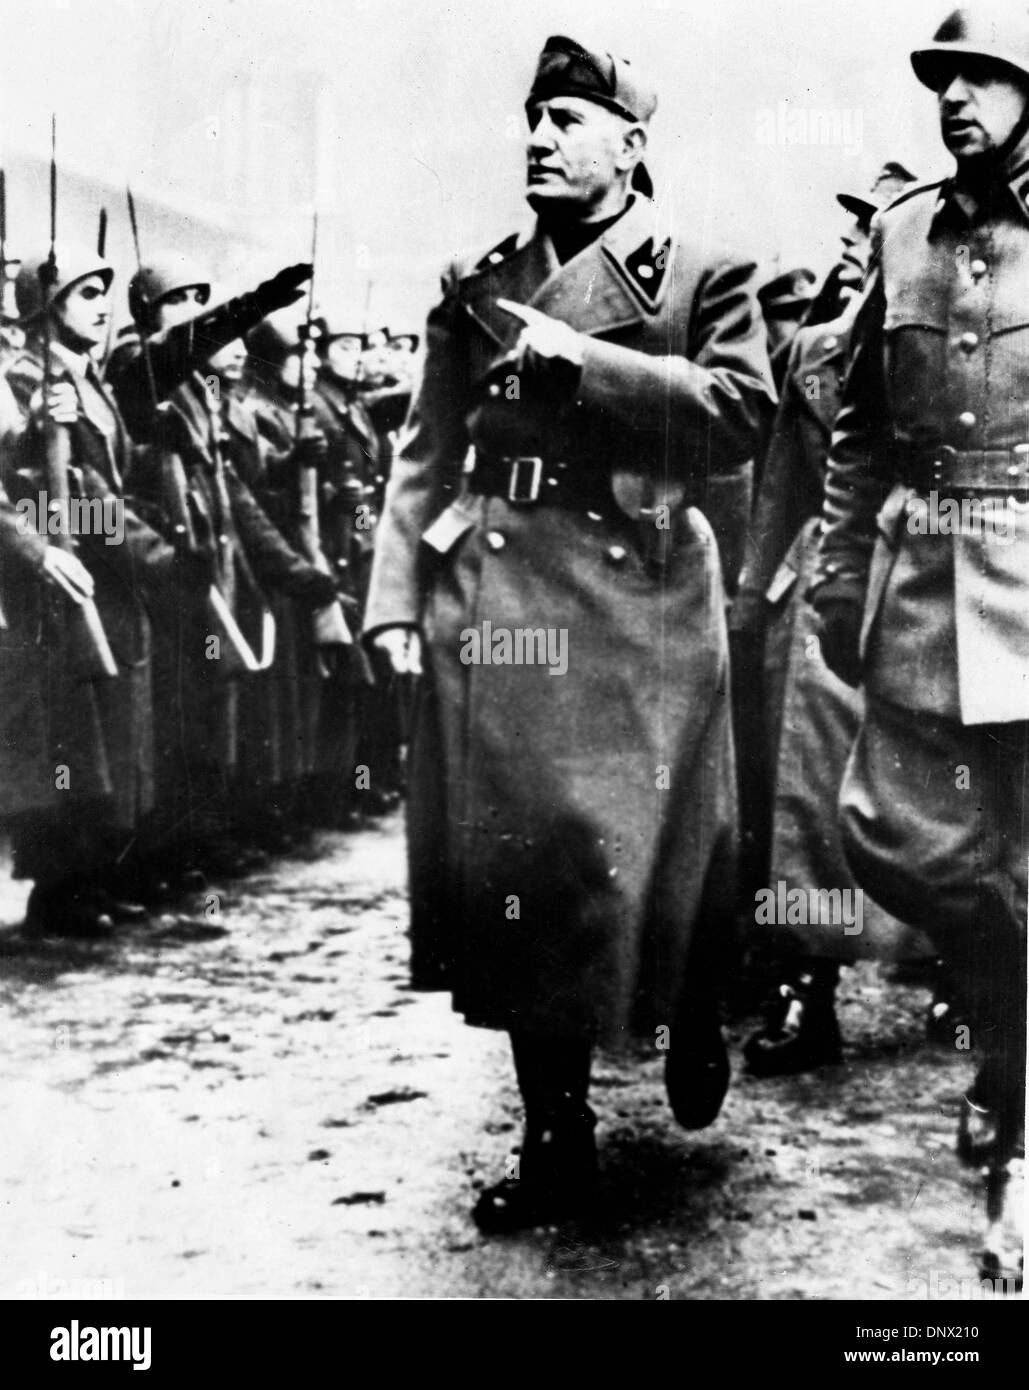 8 avril 1938 - Rome, Italie - Benito Mussolini (1883-1945) le dictateur italien et leader du mouvement fasciste avec ses généraux lors de l'inspection d'une unité d'artillerie Italienne. (Crédit Image : © Keystone Photos/ZUMAPRESS.com) Banque D'Images